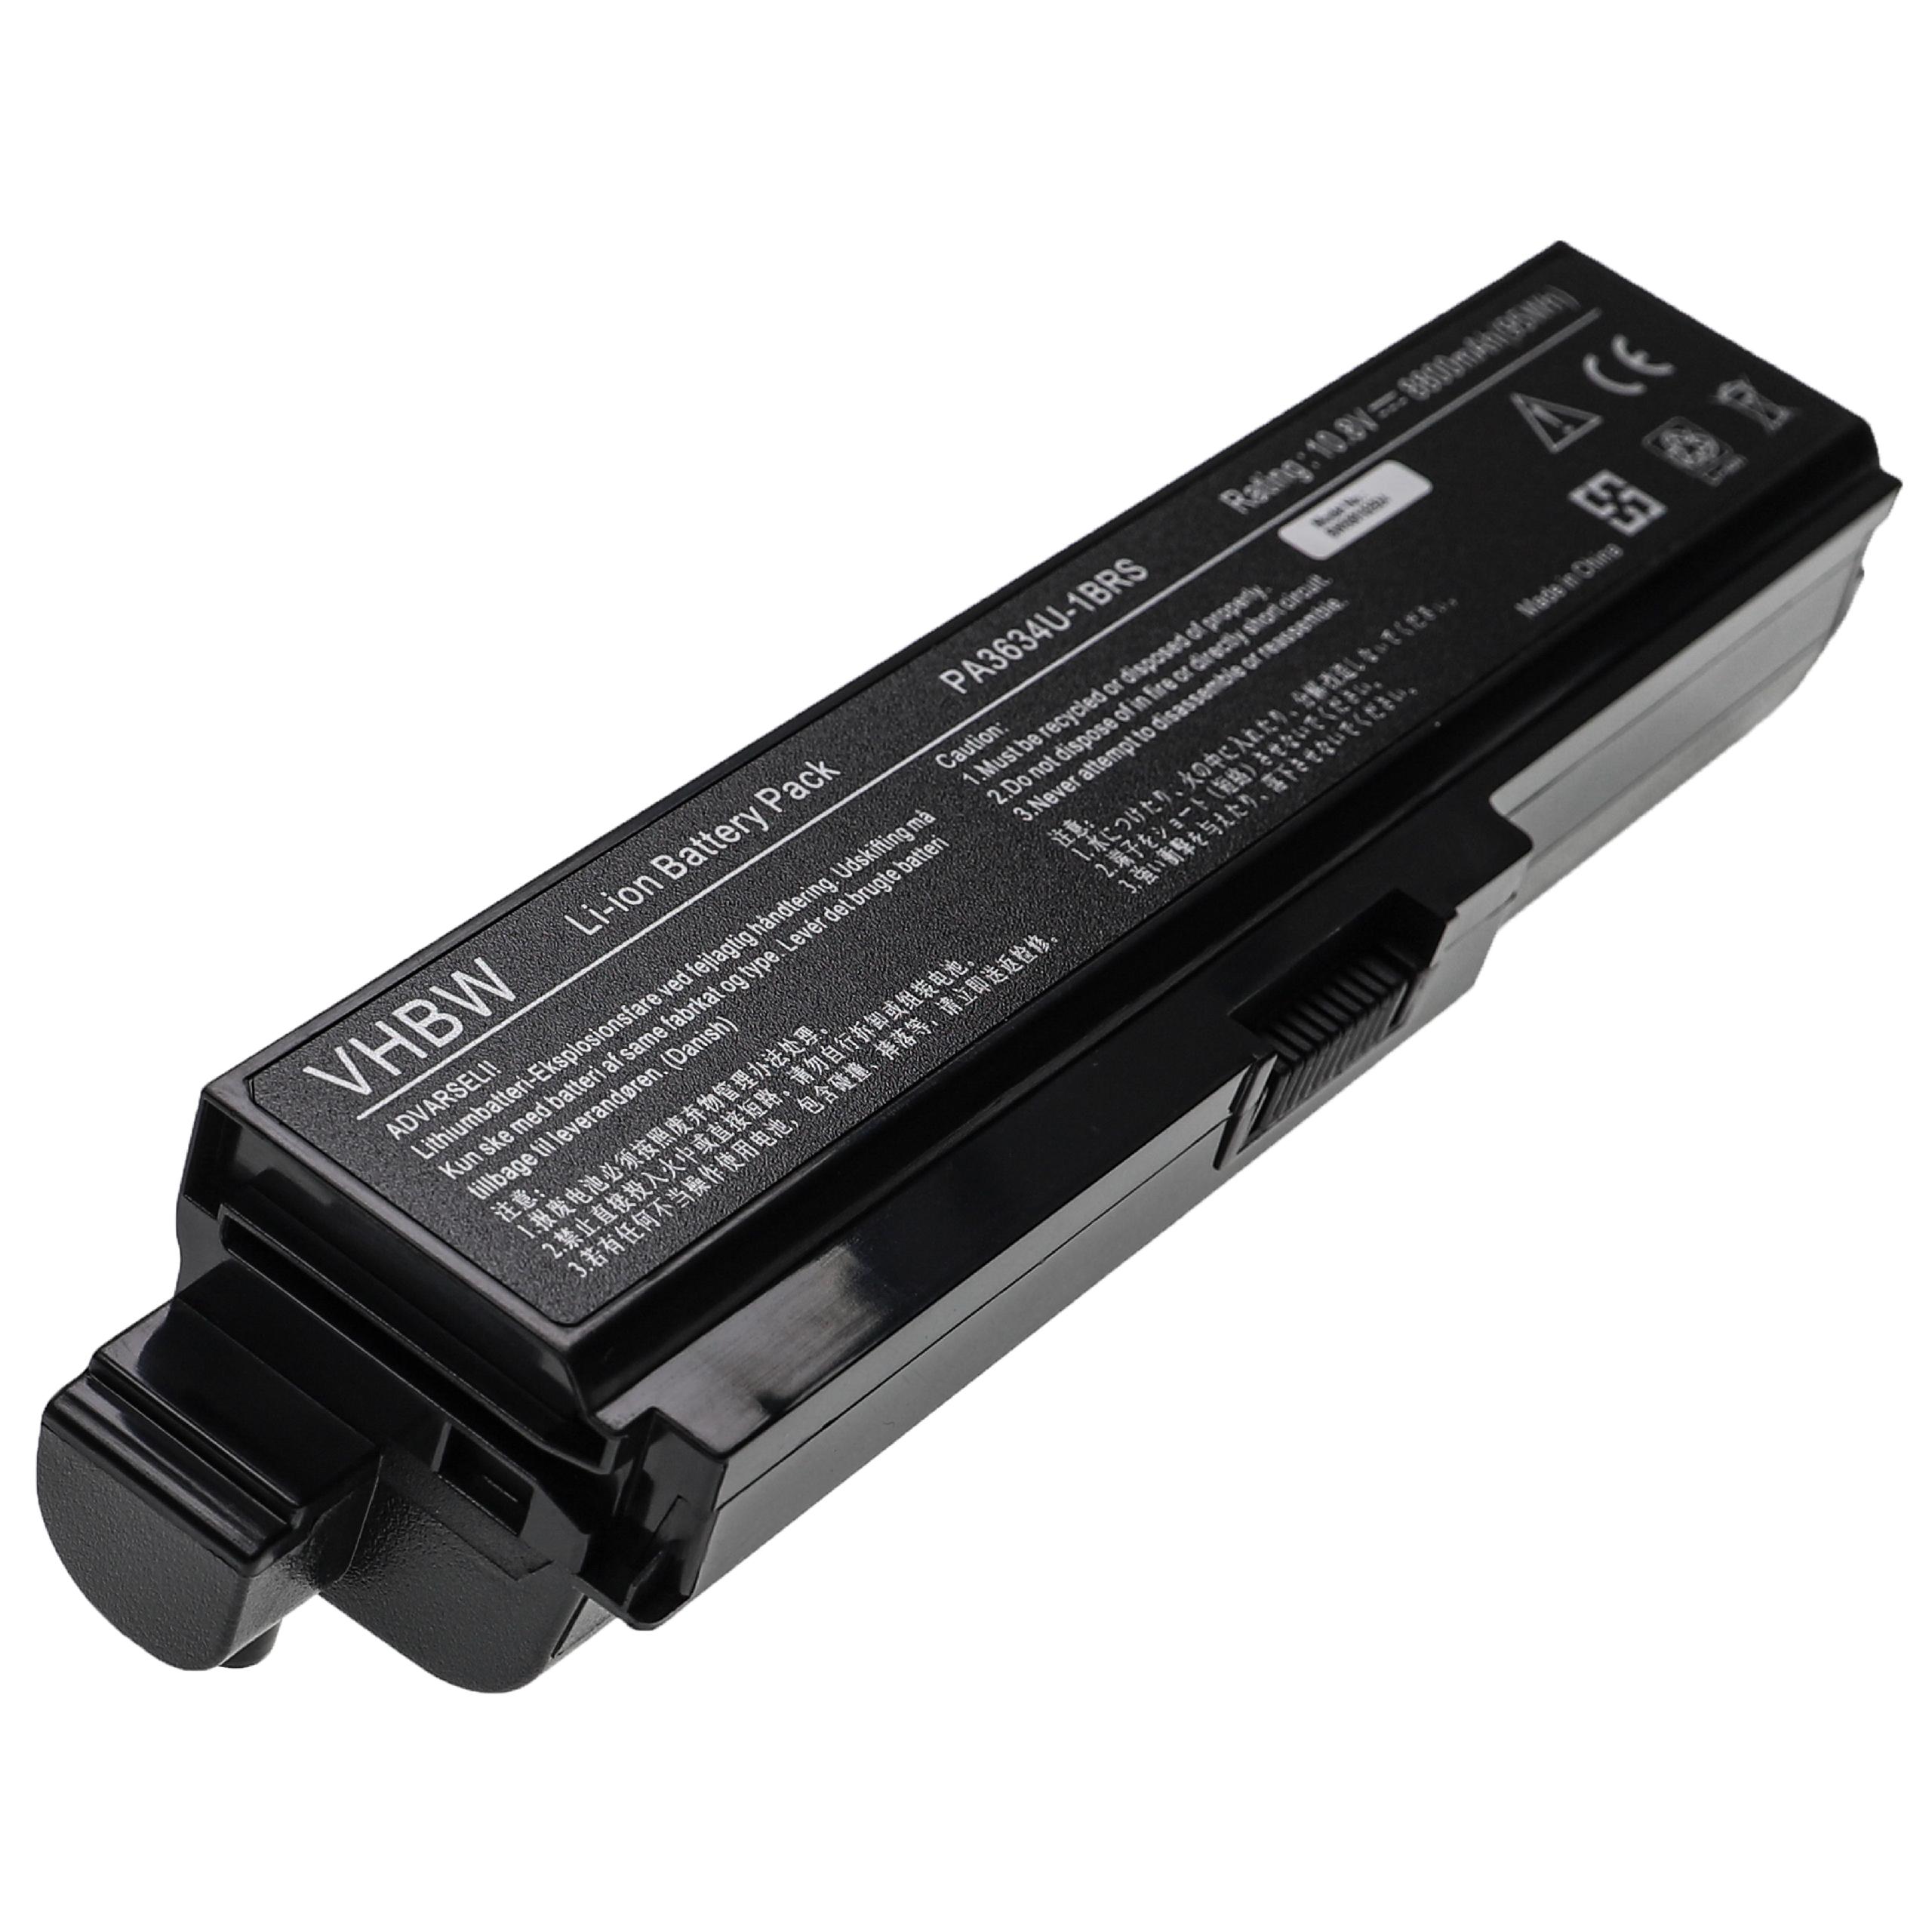 Batterie remplace Toshiba PA3634U-1BAS, PA3635U-1BAM pour ordinateur portable - 8800mAh 10,8V Li-ion, noir